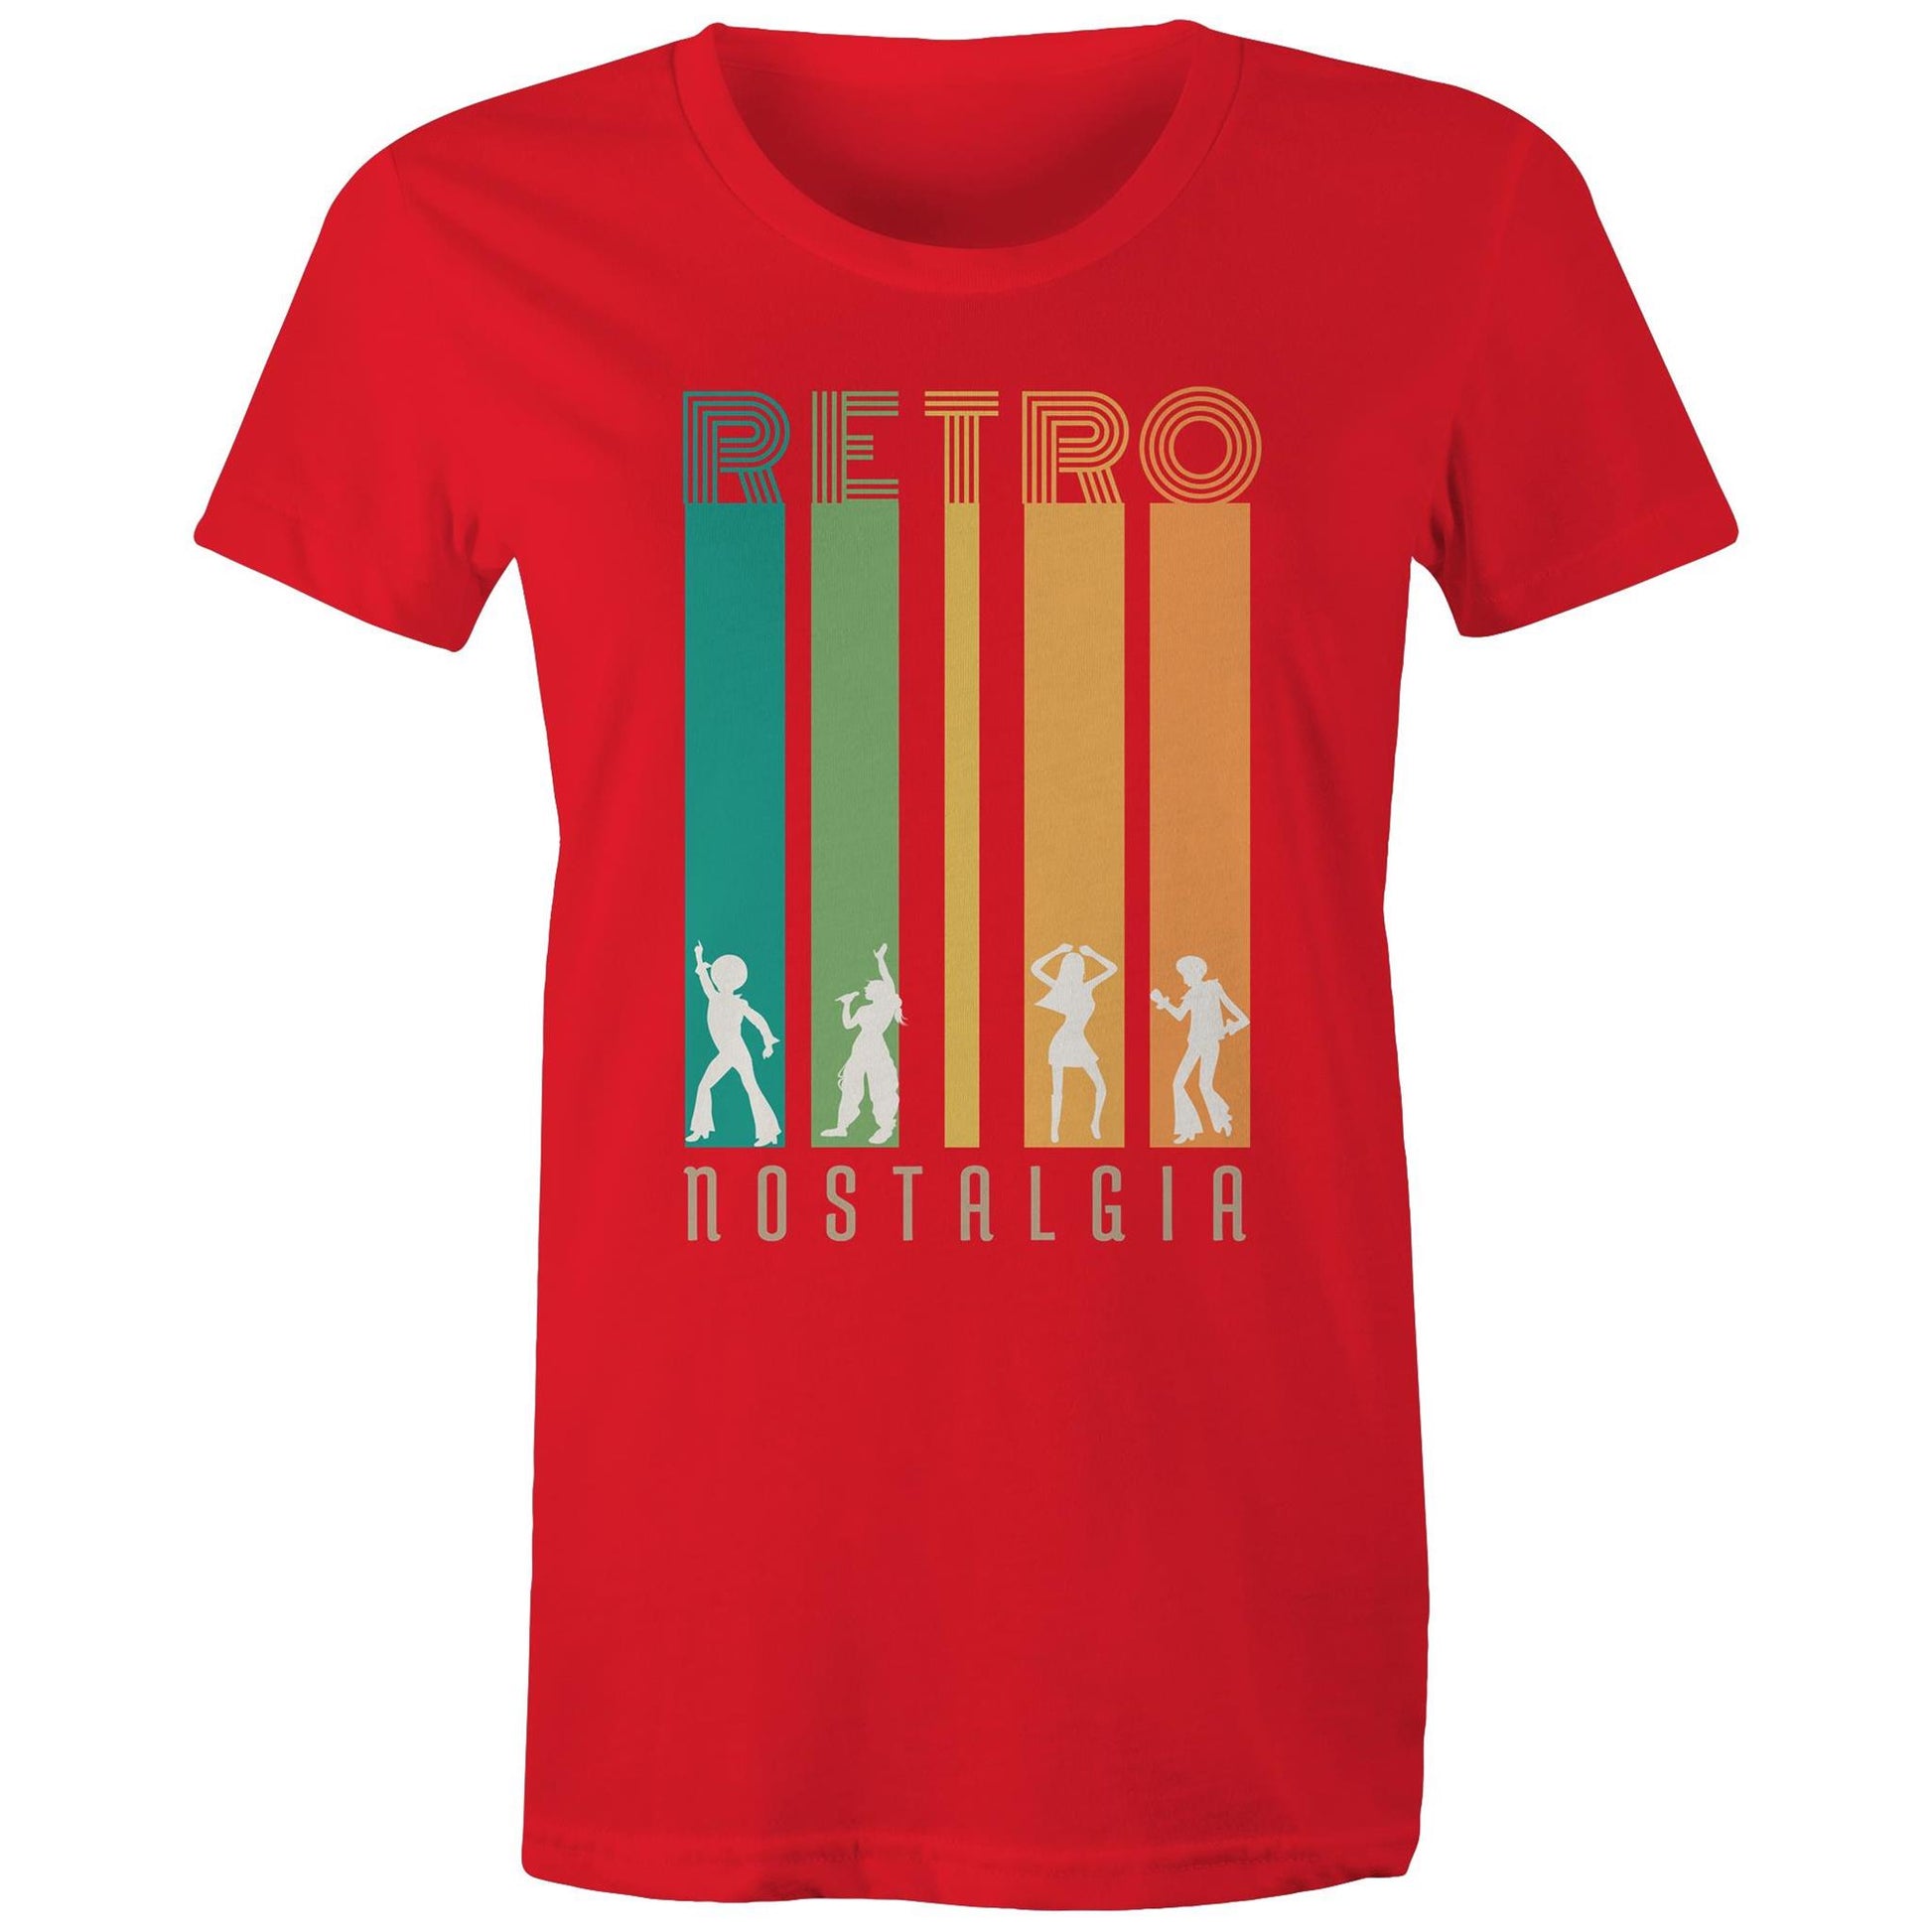 Retro Nostalgia - Womens T-shirt Red Womens T-shirt Retro